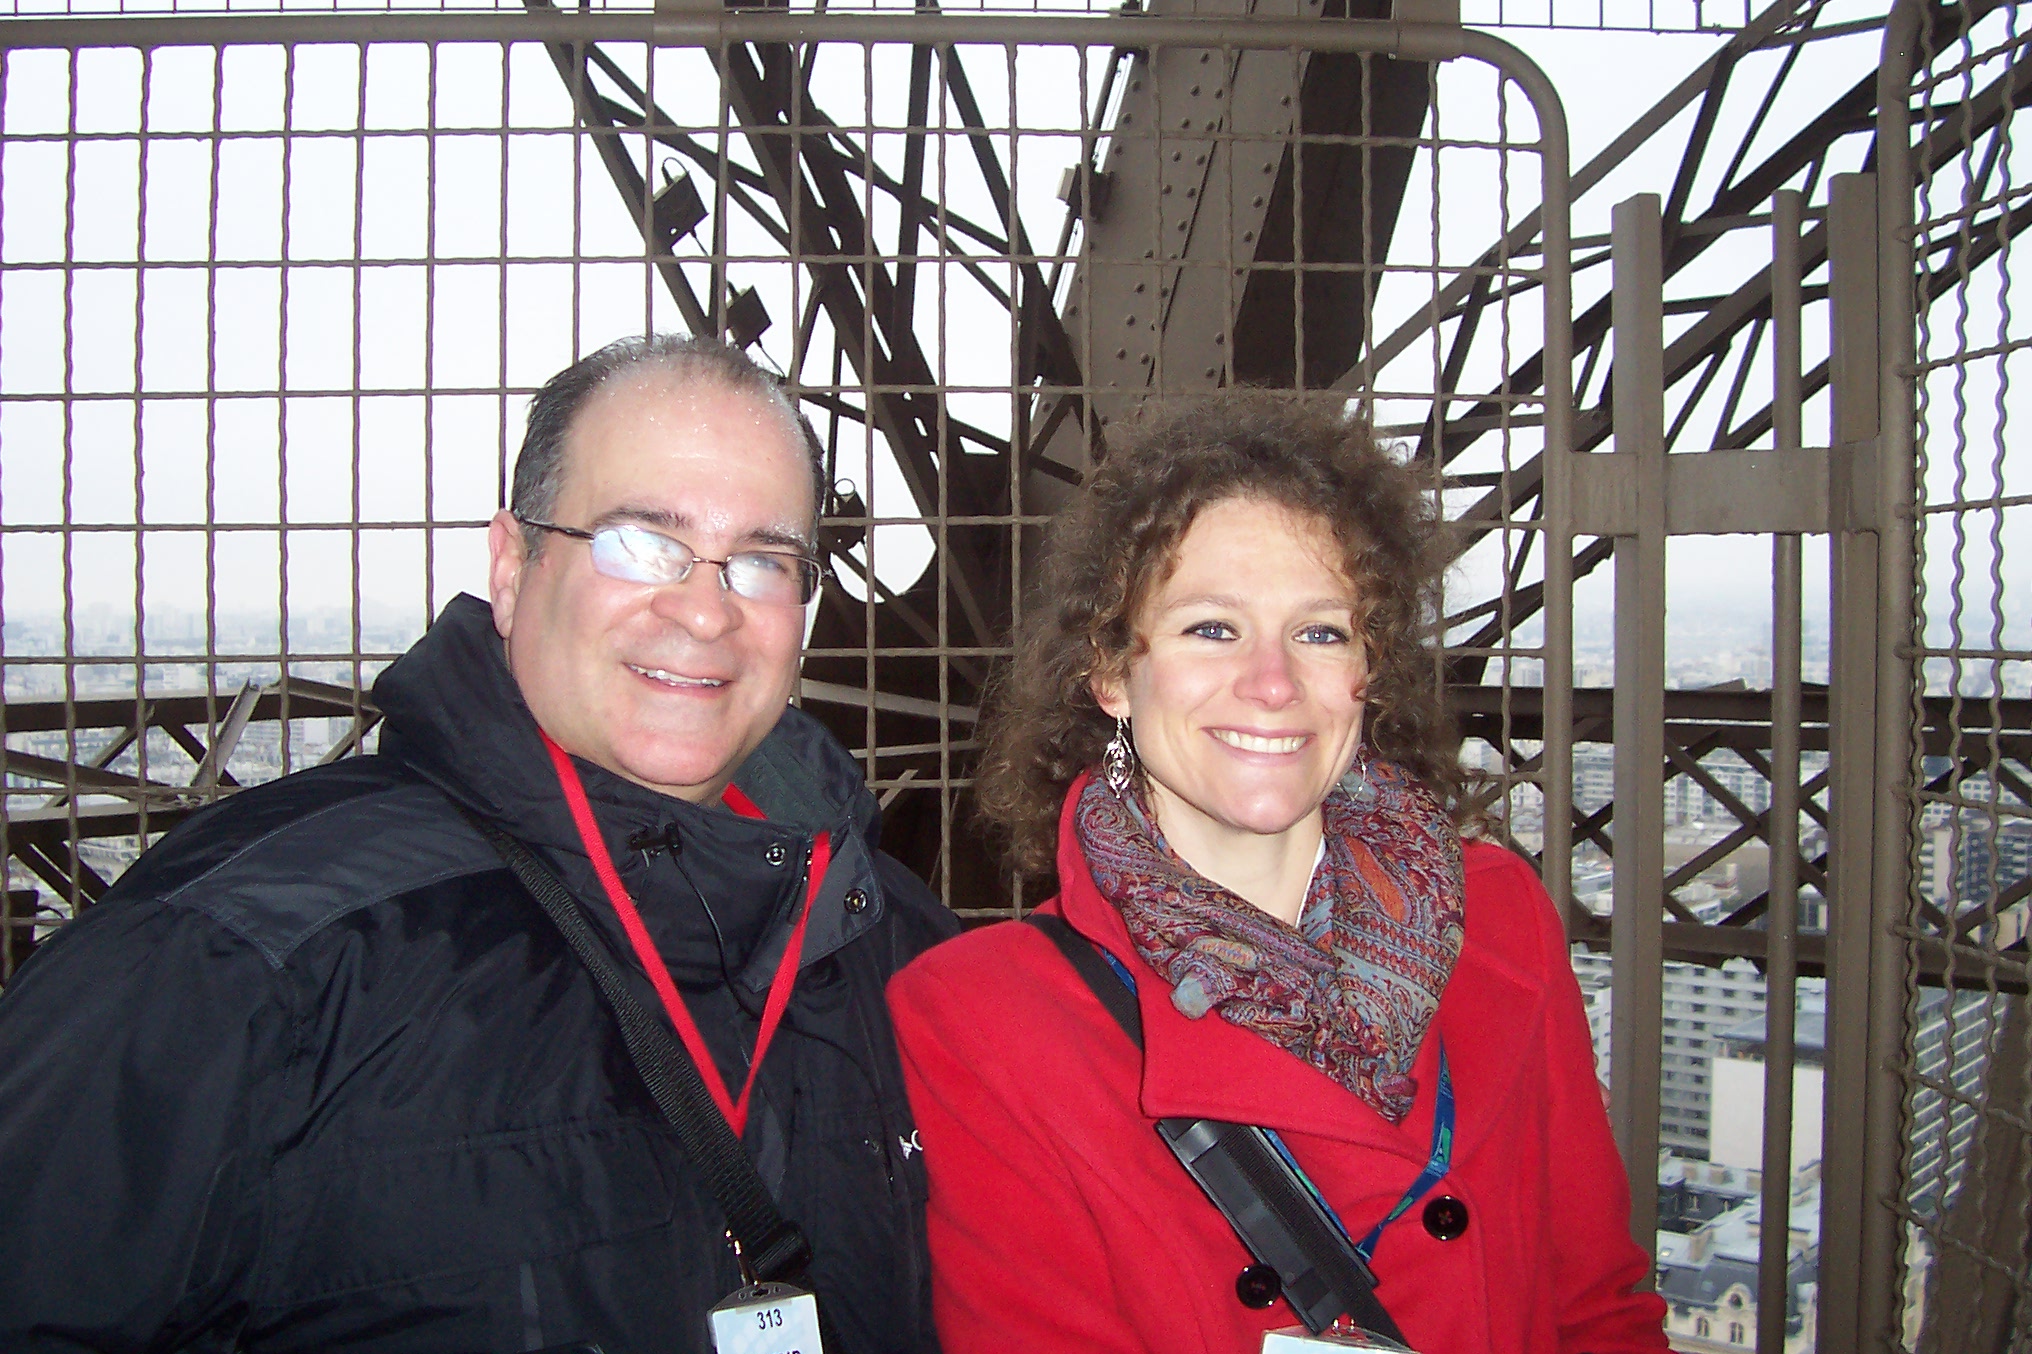 Joseph Bertolozzi & Marthe Ozbolt, Jan 8, 2013 at the summit of the Eiffel Tower